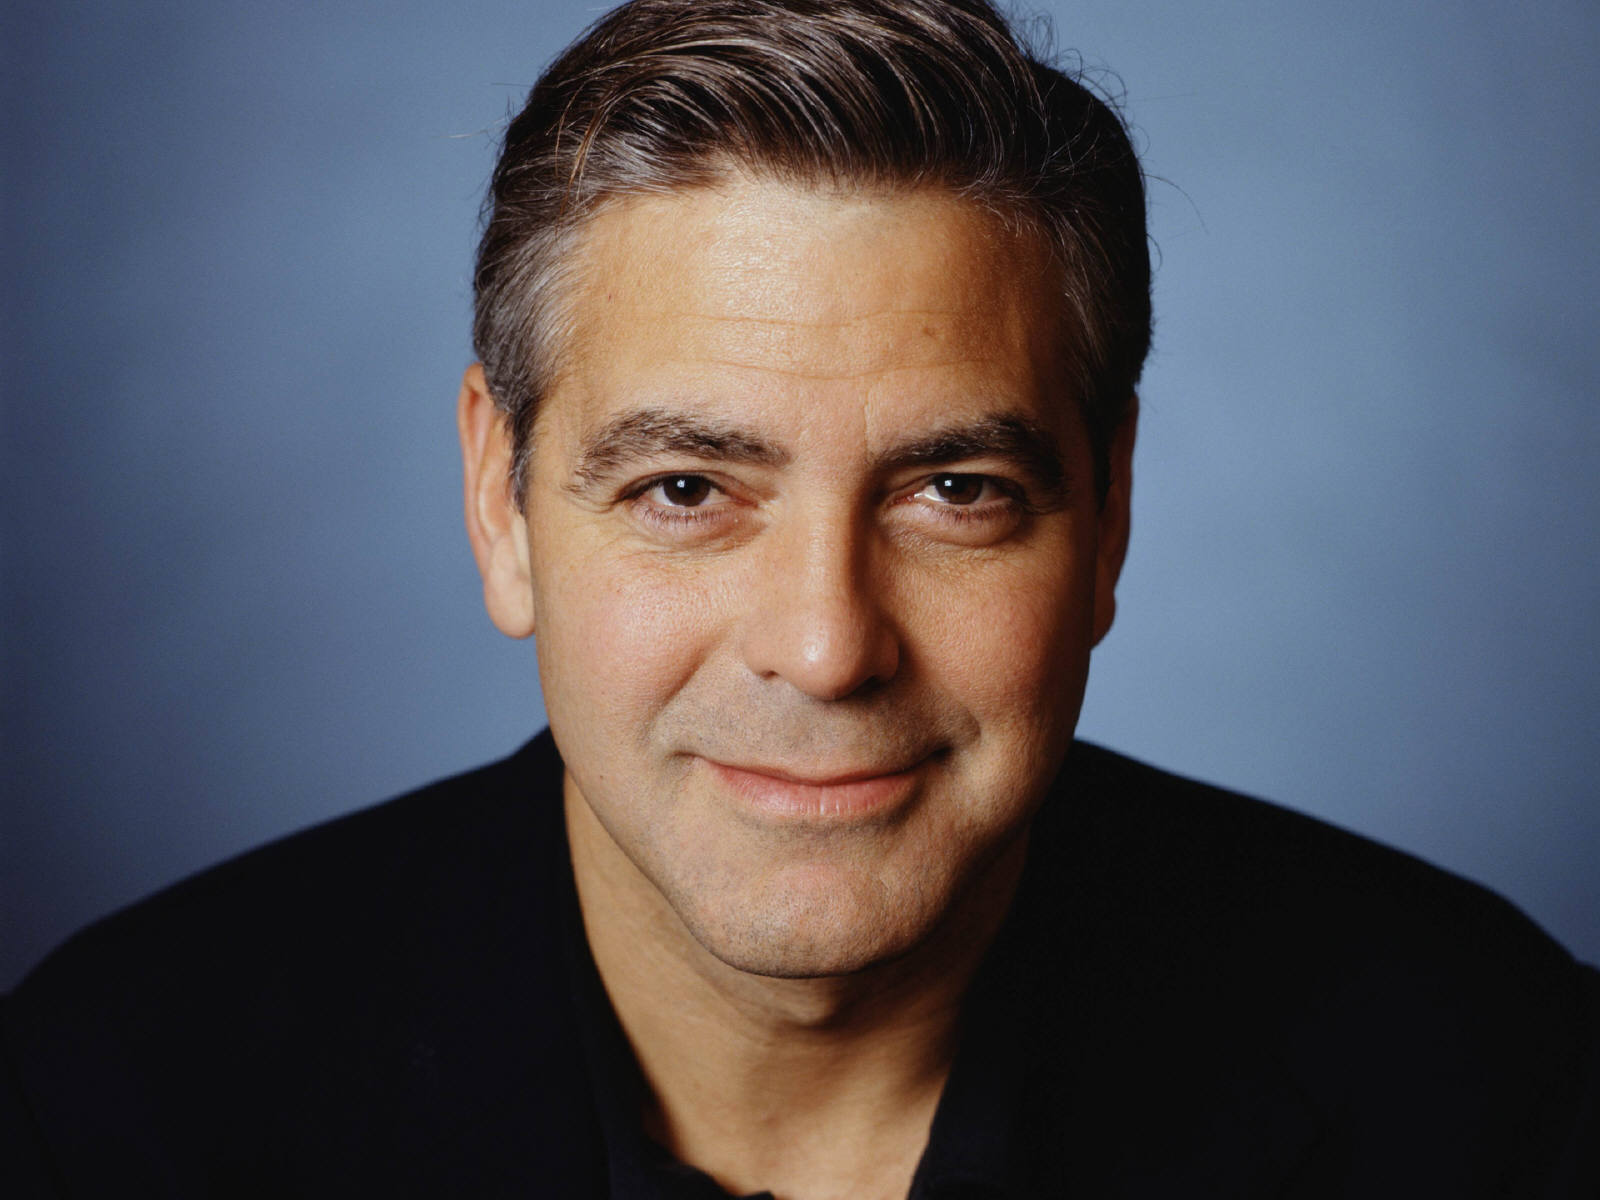 http://1.bp.blogspot.com/-6WzPvJc8M6s/TrqV0xE1dDI/AAAAAAAAJwc/01QJUUIBGbk/s1600/George_Clooney.jpg